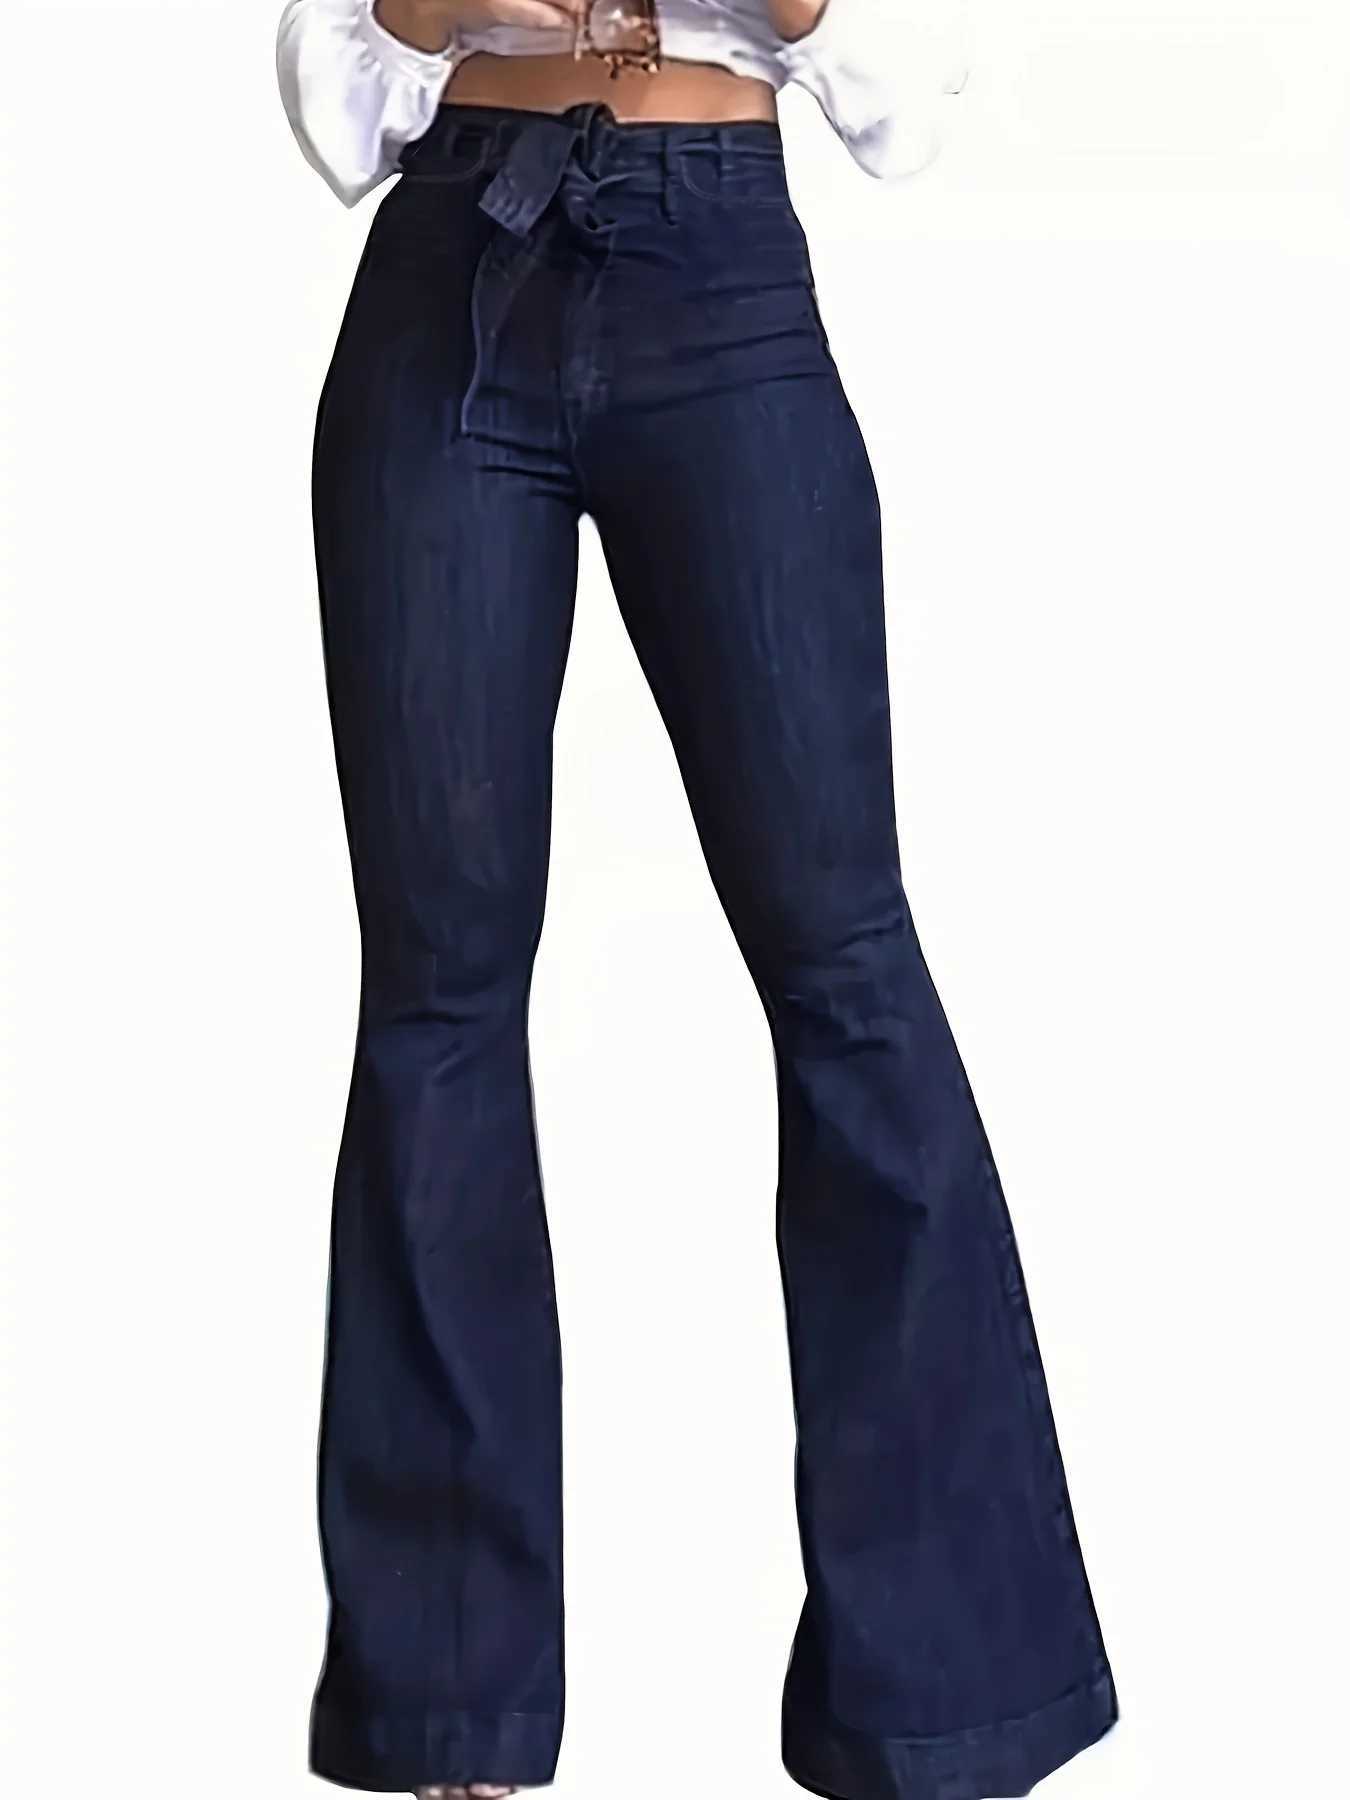 Dżinsowe dżinsy granatowe dżinsy jeansy jeansowe jesień wysokotcena z paskiem dolne szerokie nogi dżinsowe spodnie dżinsowe dżinsowe ubrania dżinsowe